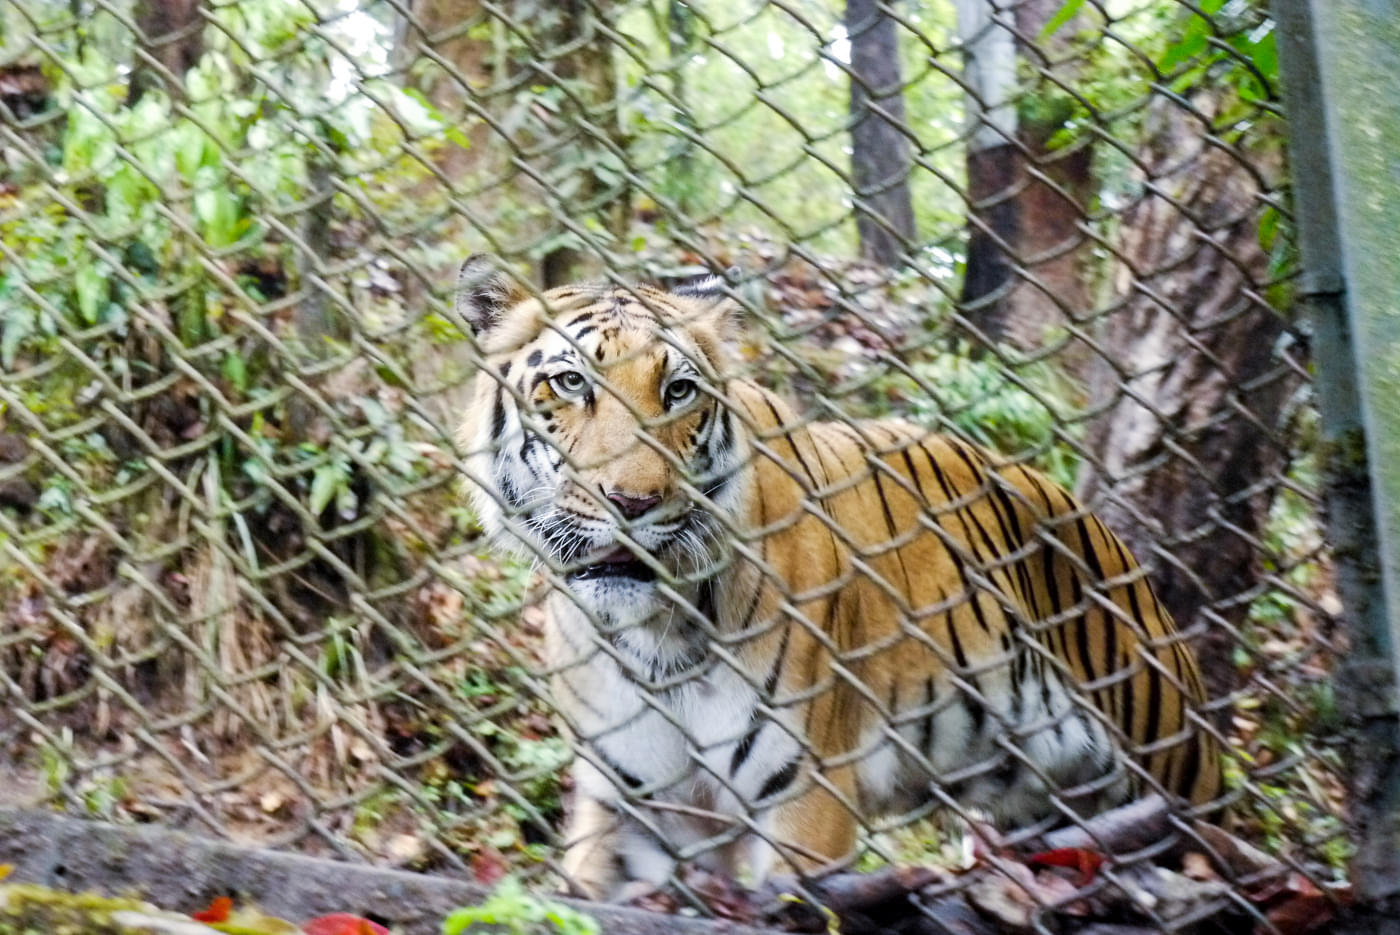 Padmaja Naidu Himalayan Zoological Park Overview